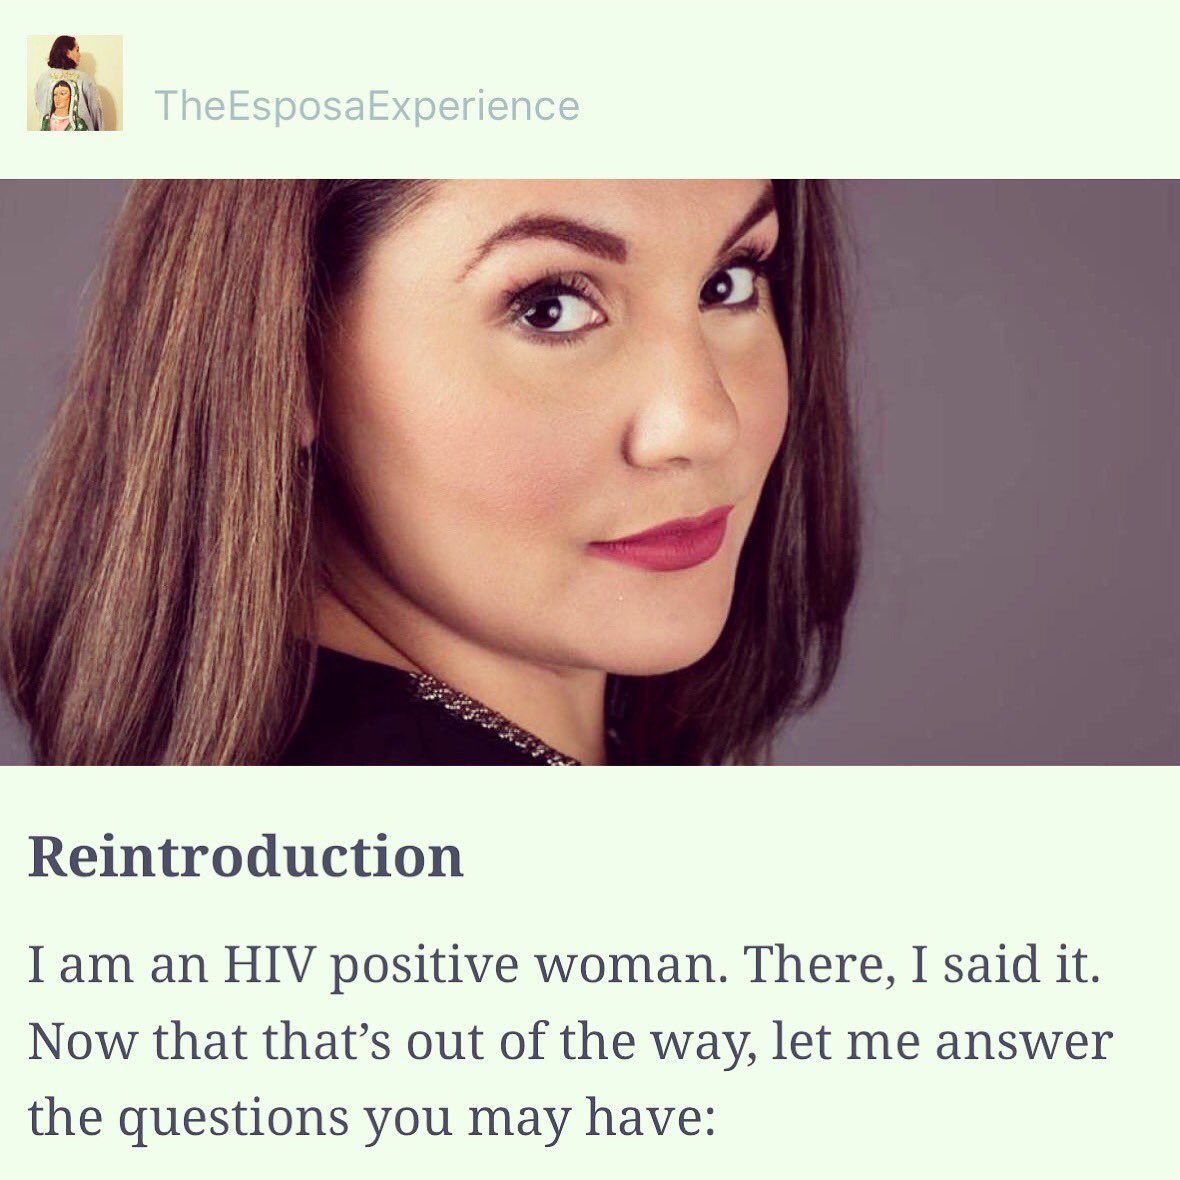 Allow me to reintroduce myself....theesposaexperience.com #esposaexperience #hiv #HIVpositive #HIVAIDS #hivawareness #hivstatus #latina